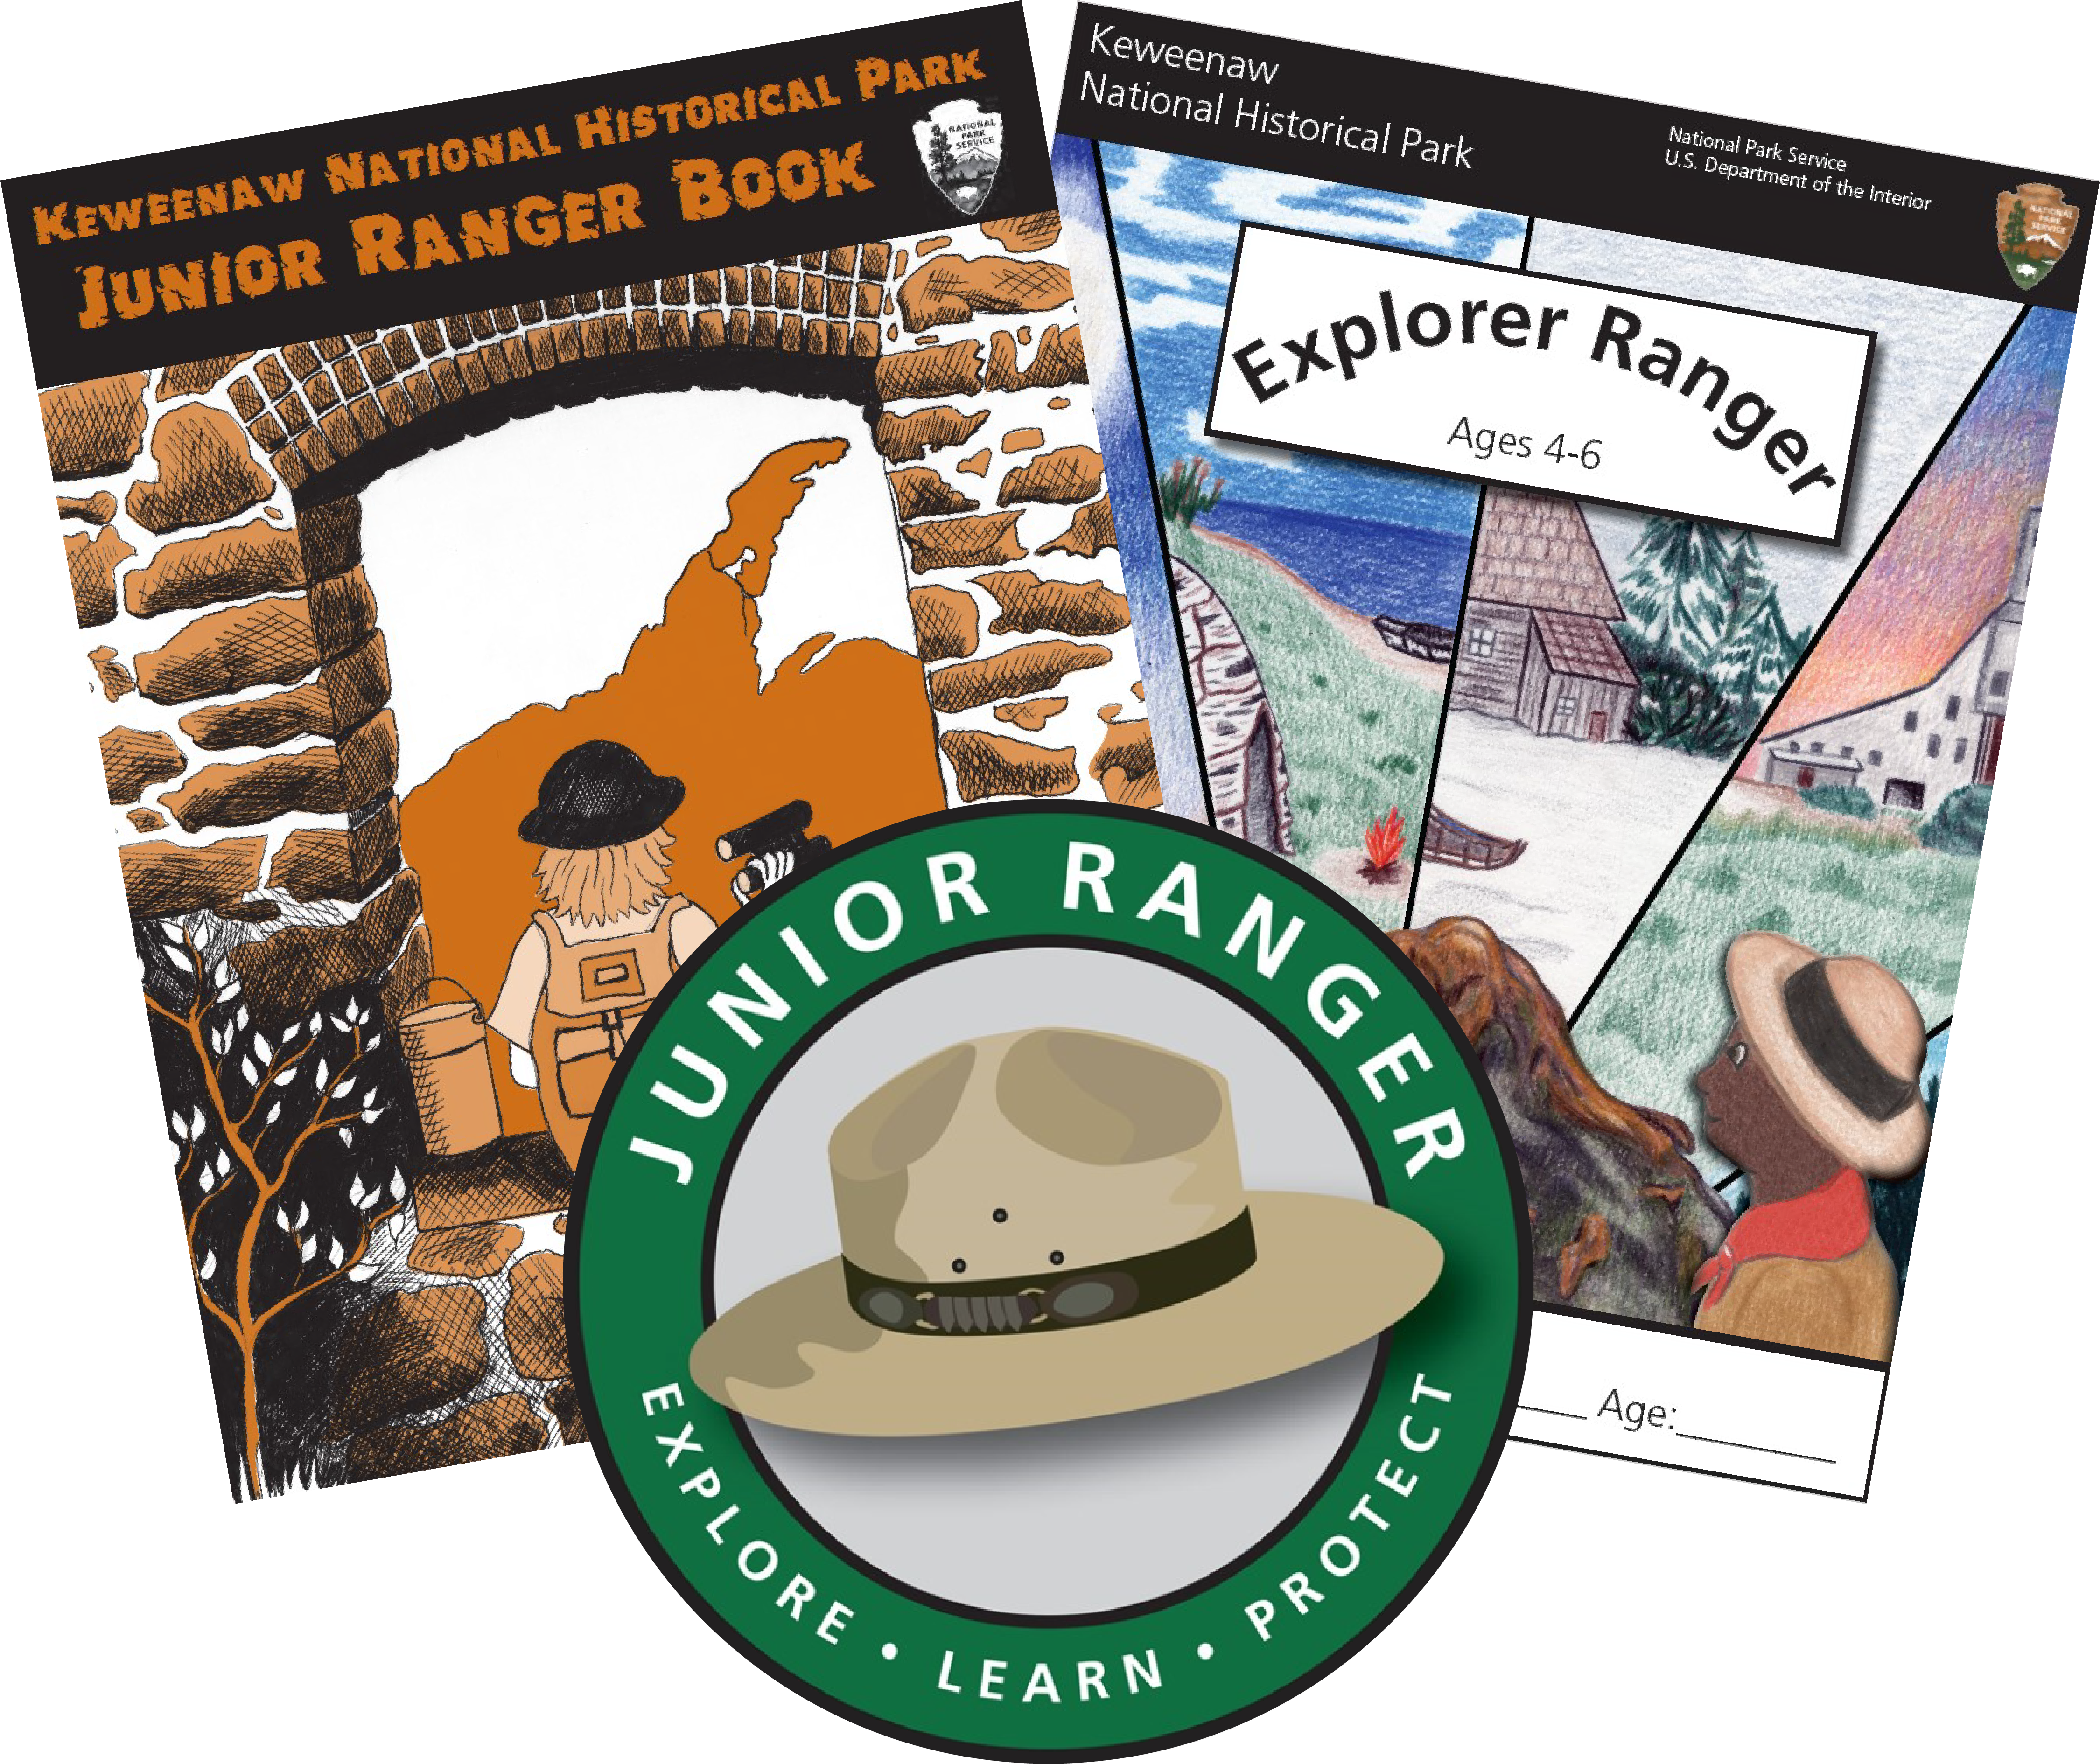 Two junior ranger books and a junior ranger logo